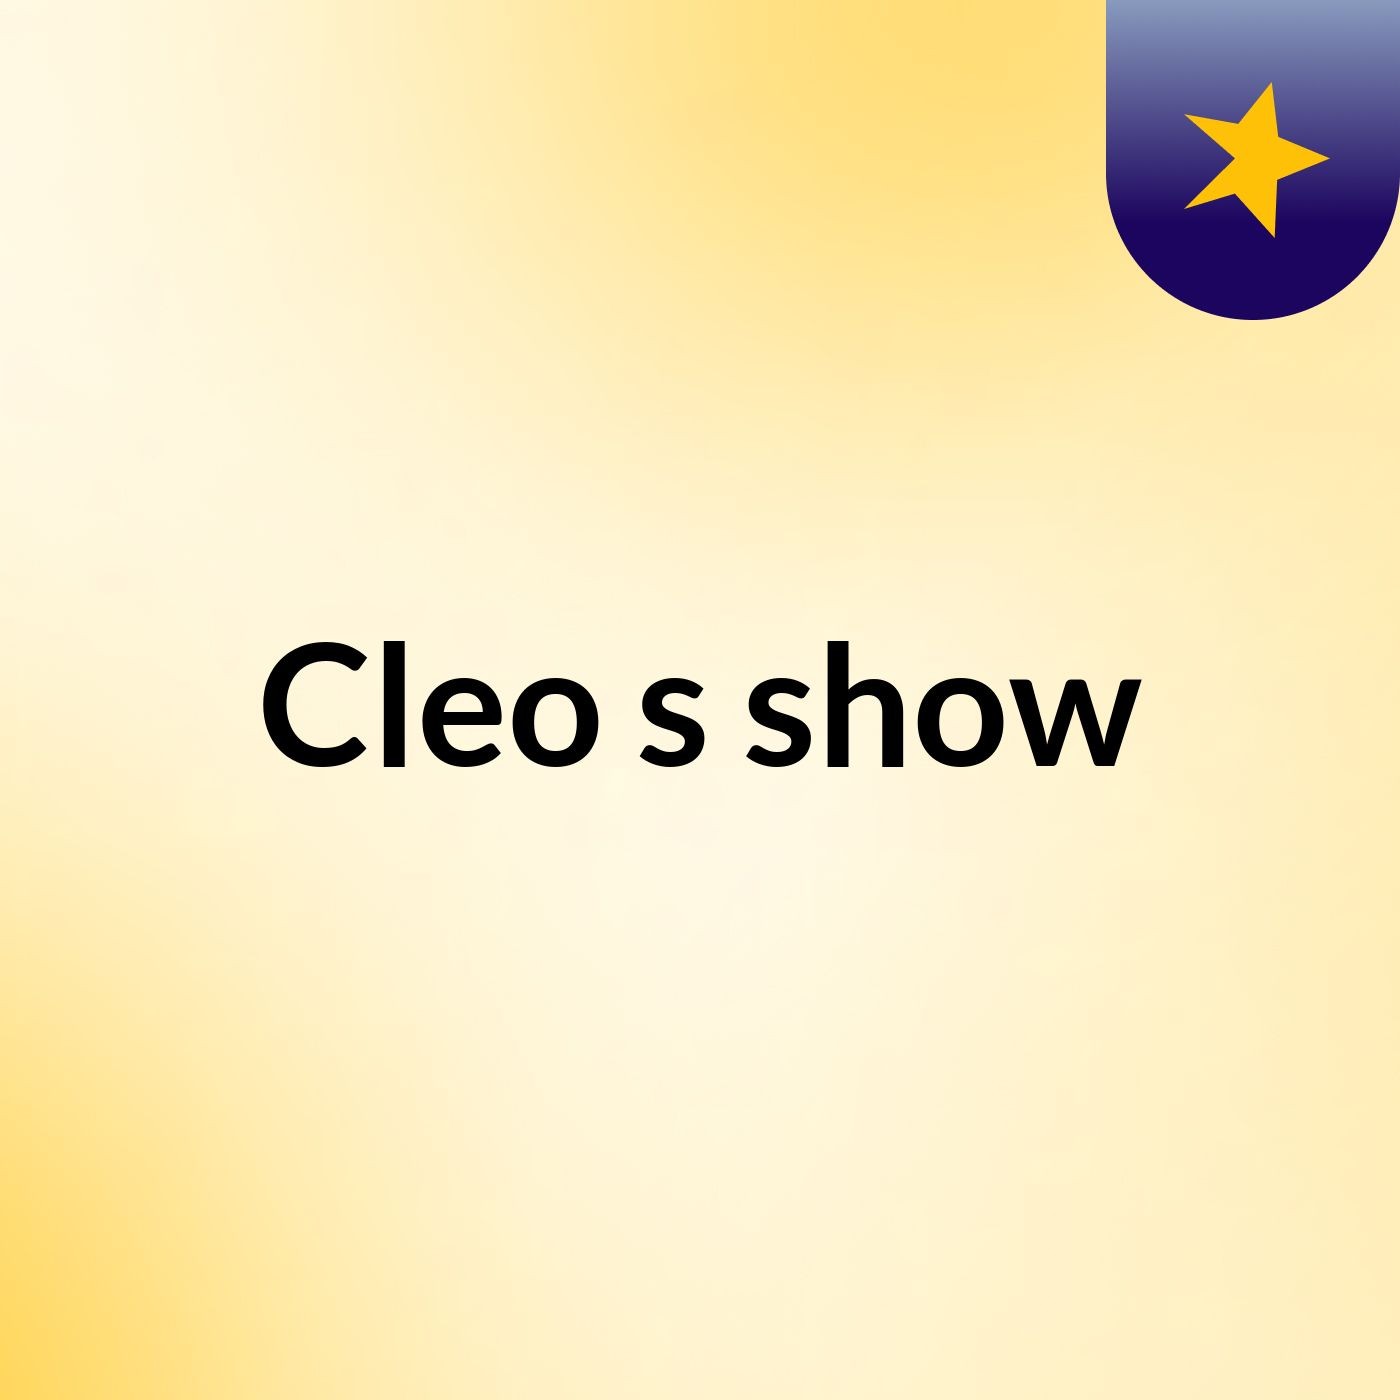 Cleo's show